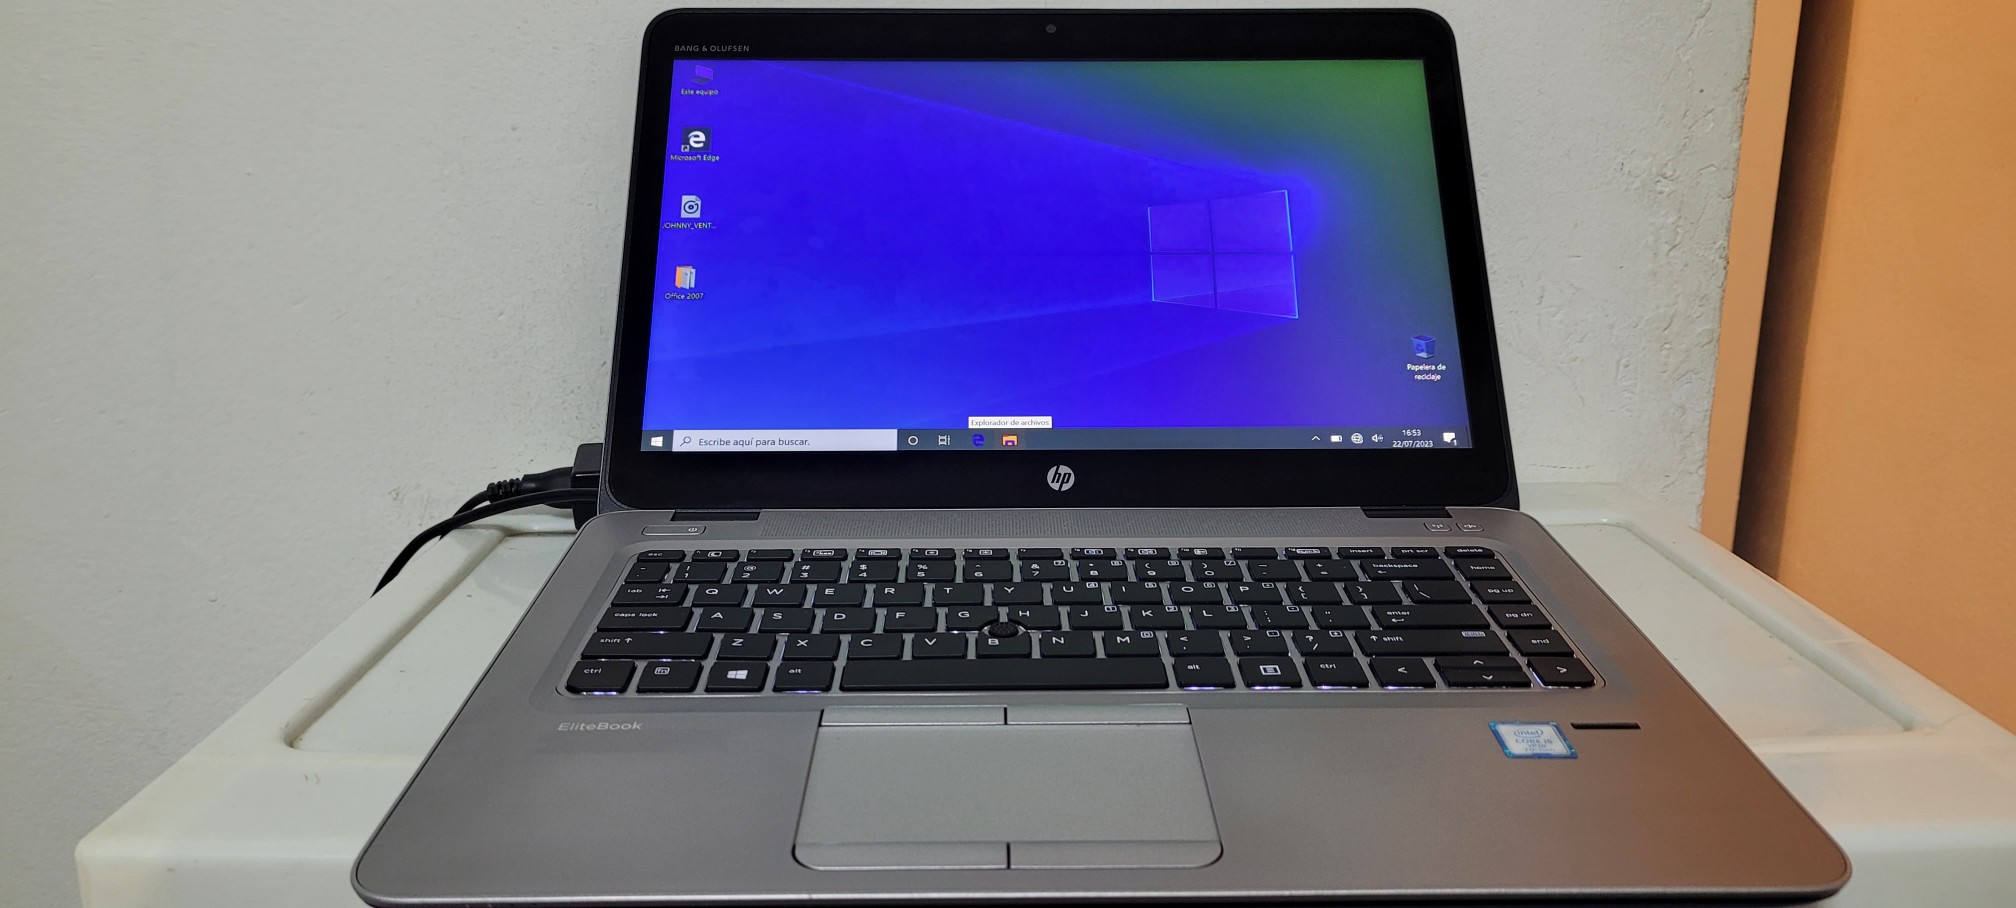 computadoras y laptops - Laptop hp Touch 14 Pulg Core i5 7ma Gen Ram 8gb ddr4 Disco 500gb bluetoth